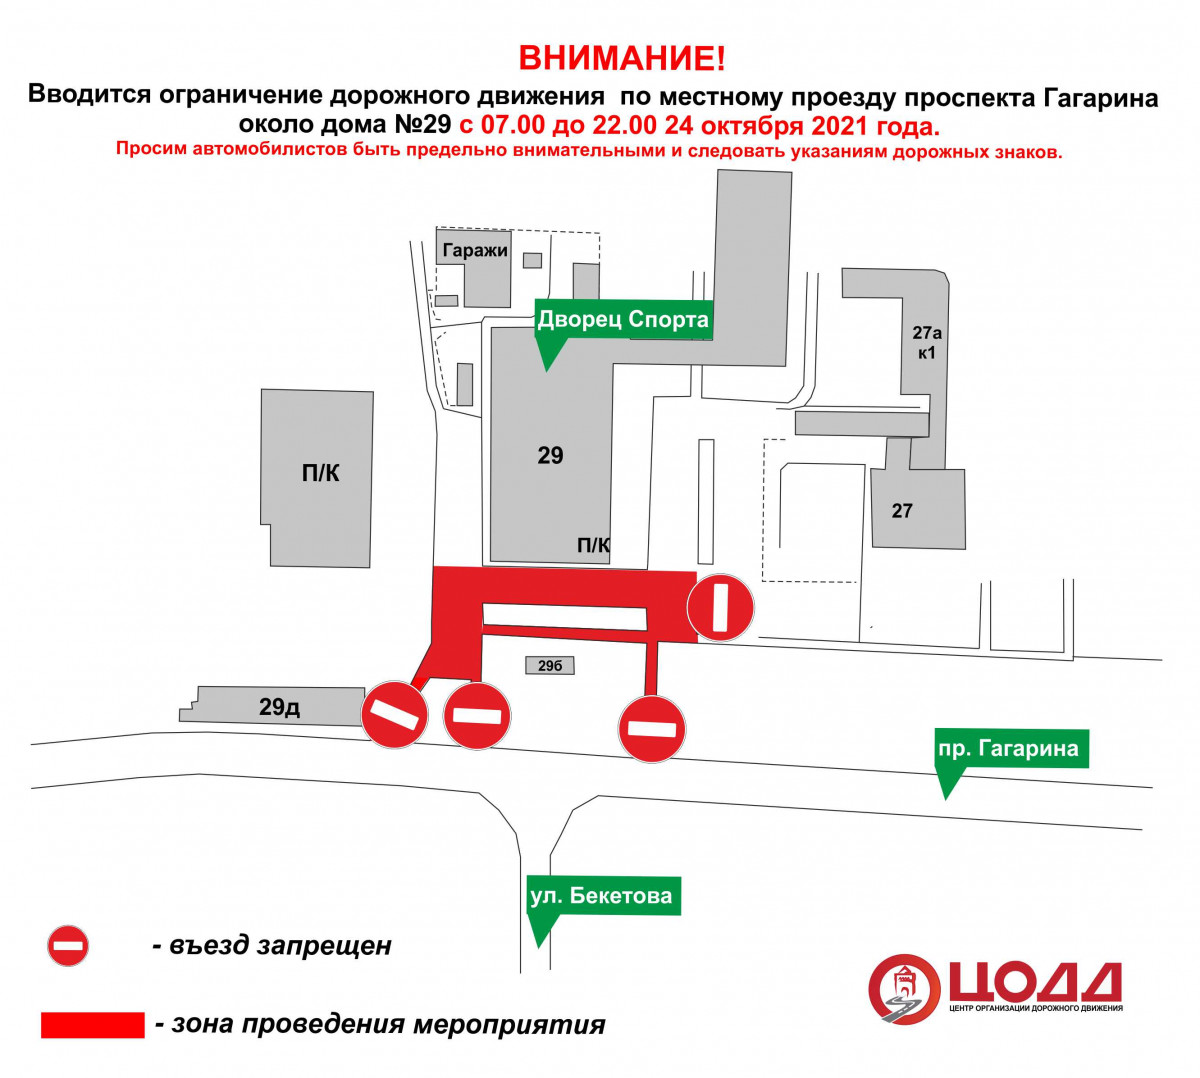 Движение транспорта приостановят на проспекте Гагарина 24 октября